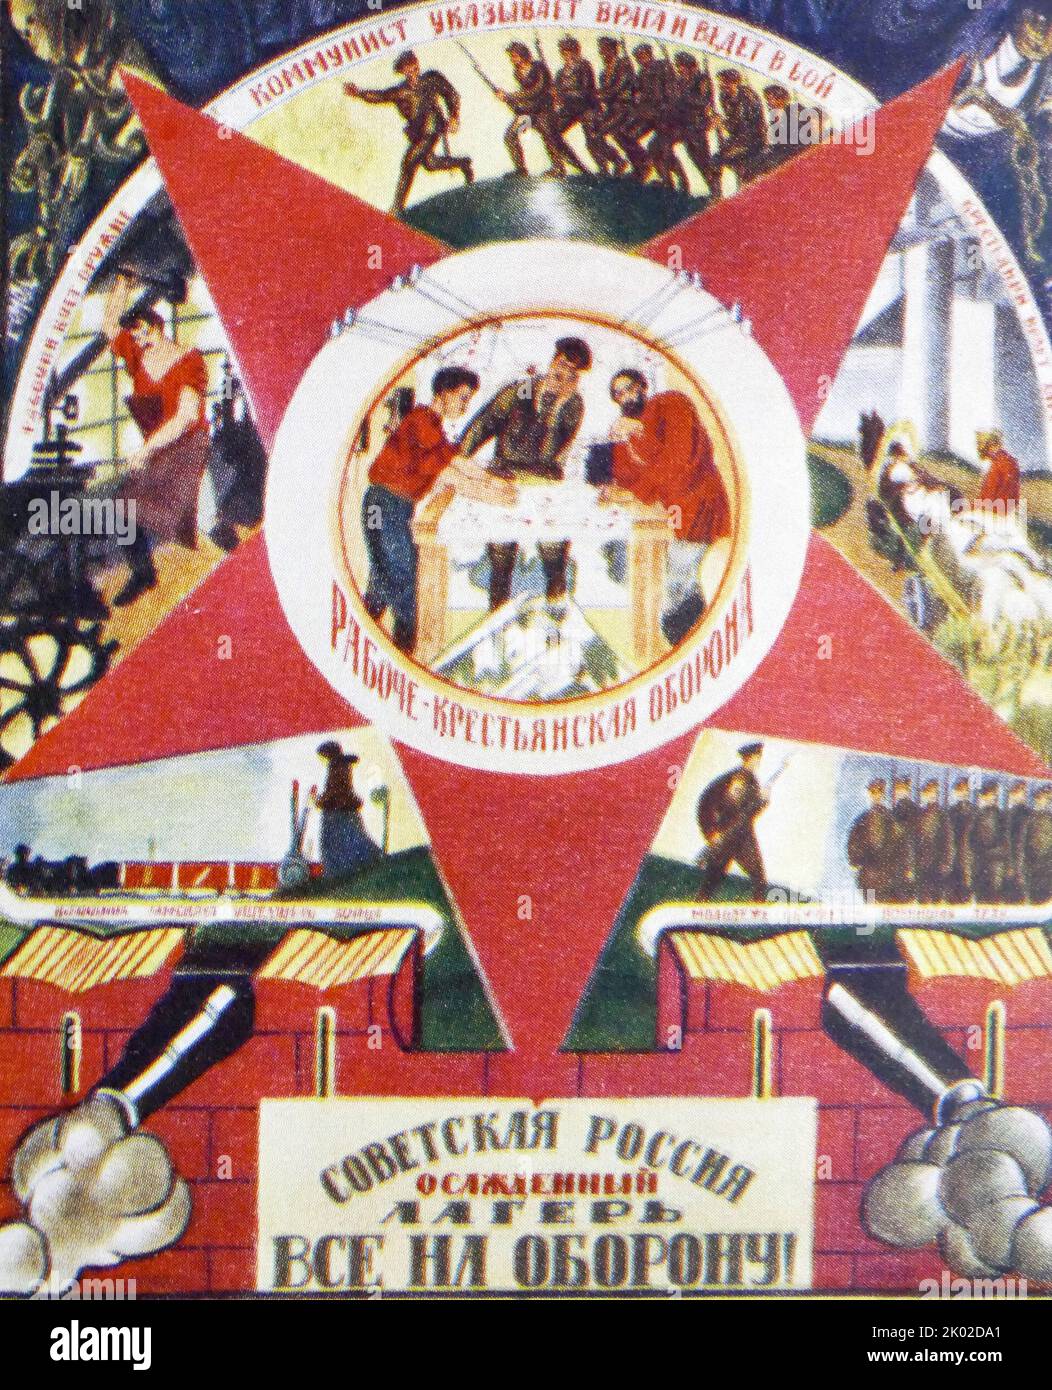 Sowjetrussland - eine belagerte Festung. Es ist ein Aufruf zur Waffe! Poster, 1919.&#13;&#10; Stockfoto